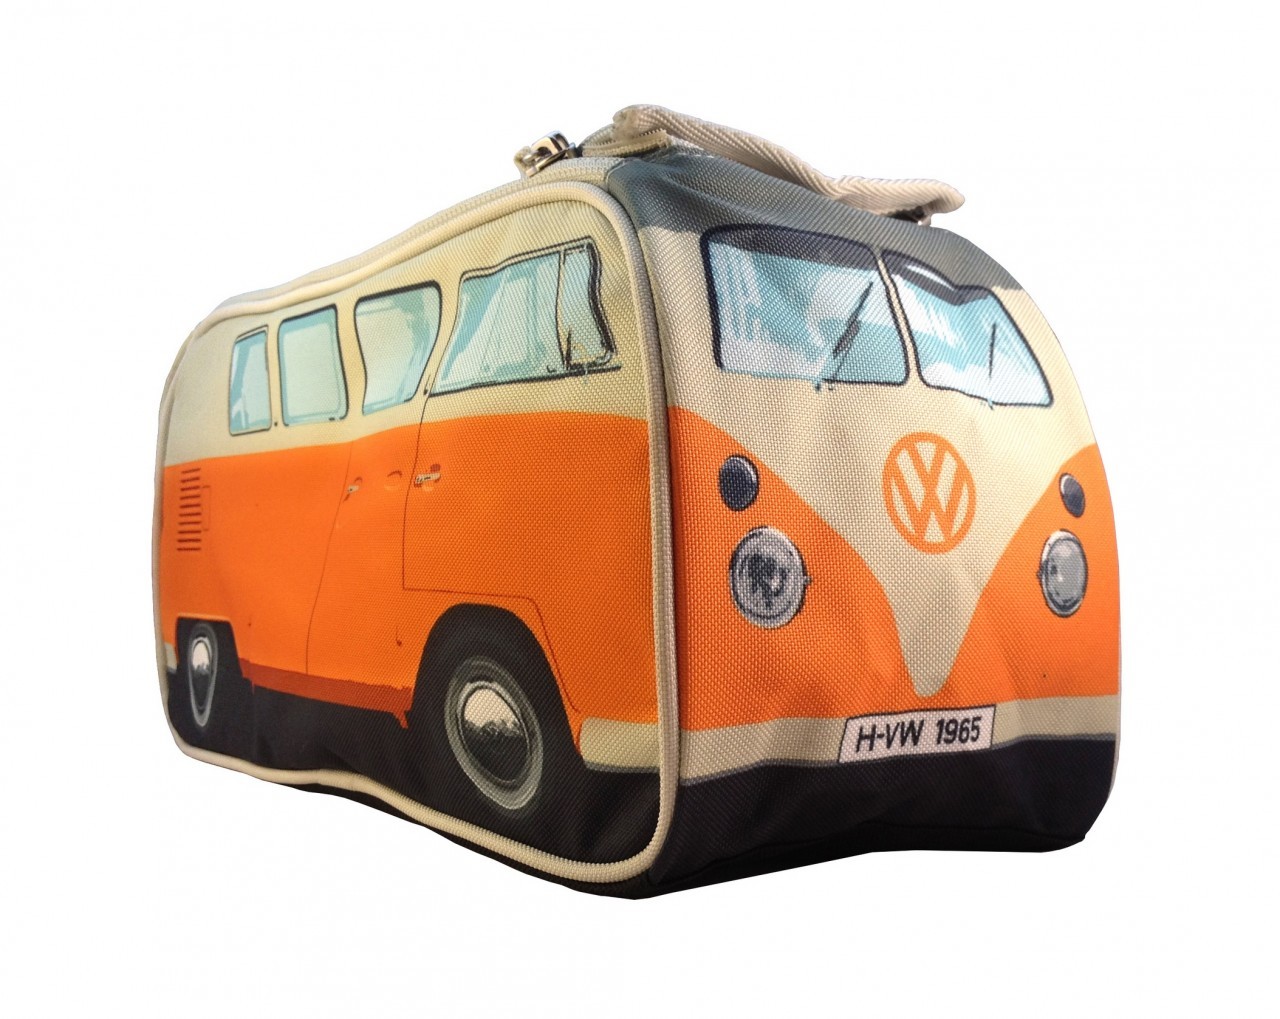 Verward Gespecificeerd Interactie VW Camper Wash Bag - Nunet.nl - Grootste aanbod leuke dingen